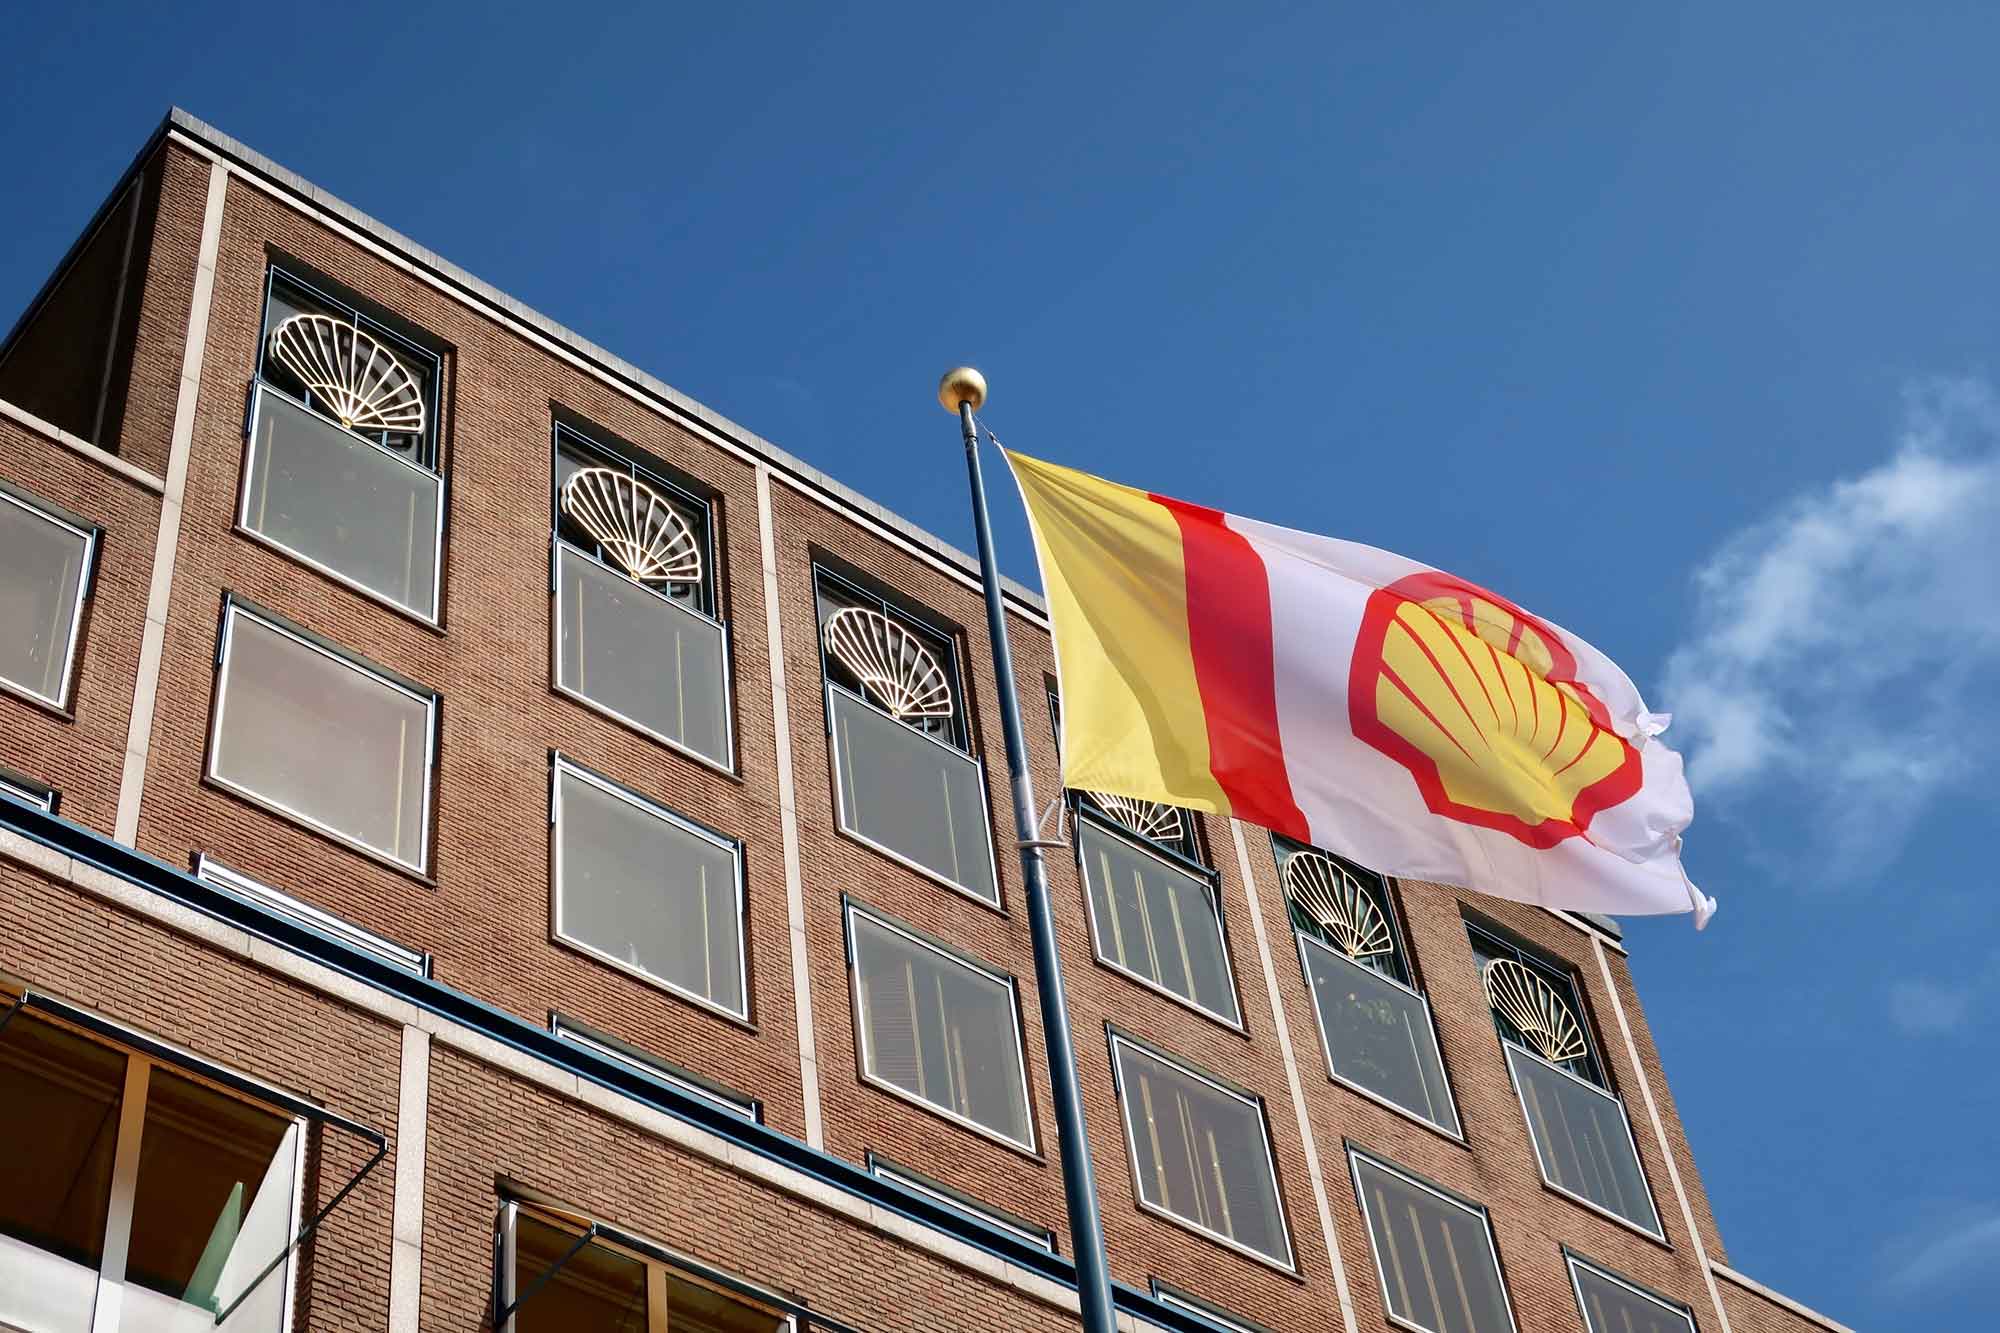 La petrolera angloholandesa Shell anunció que invertirá unos 2.000 millones de dólares para comprar acciones propias. (Foto: gentileza)